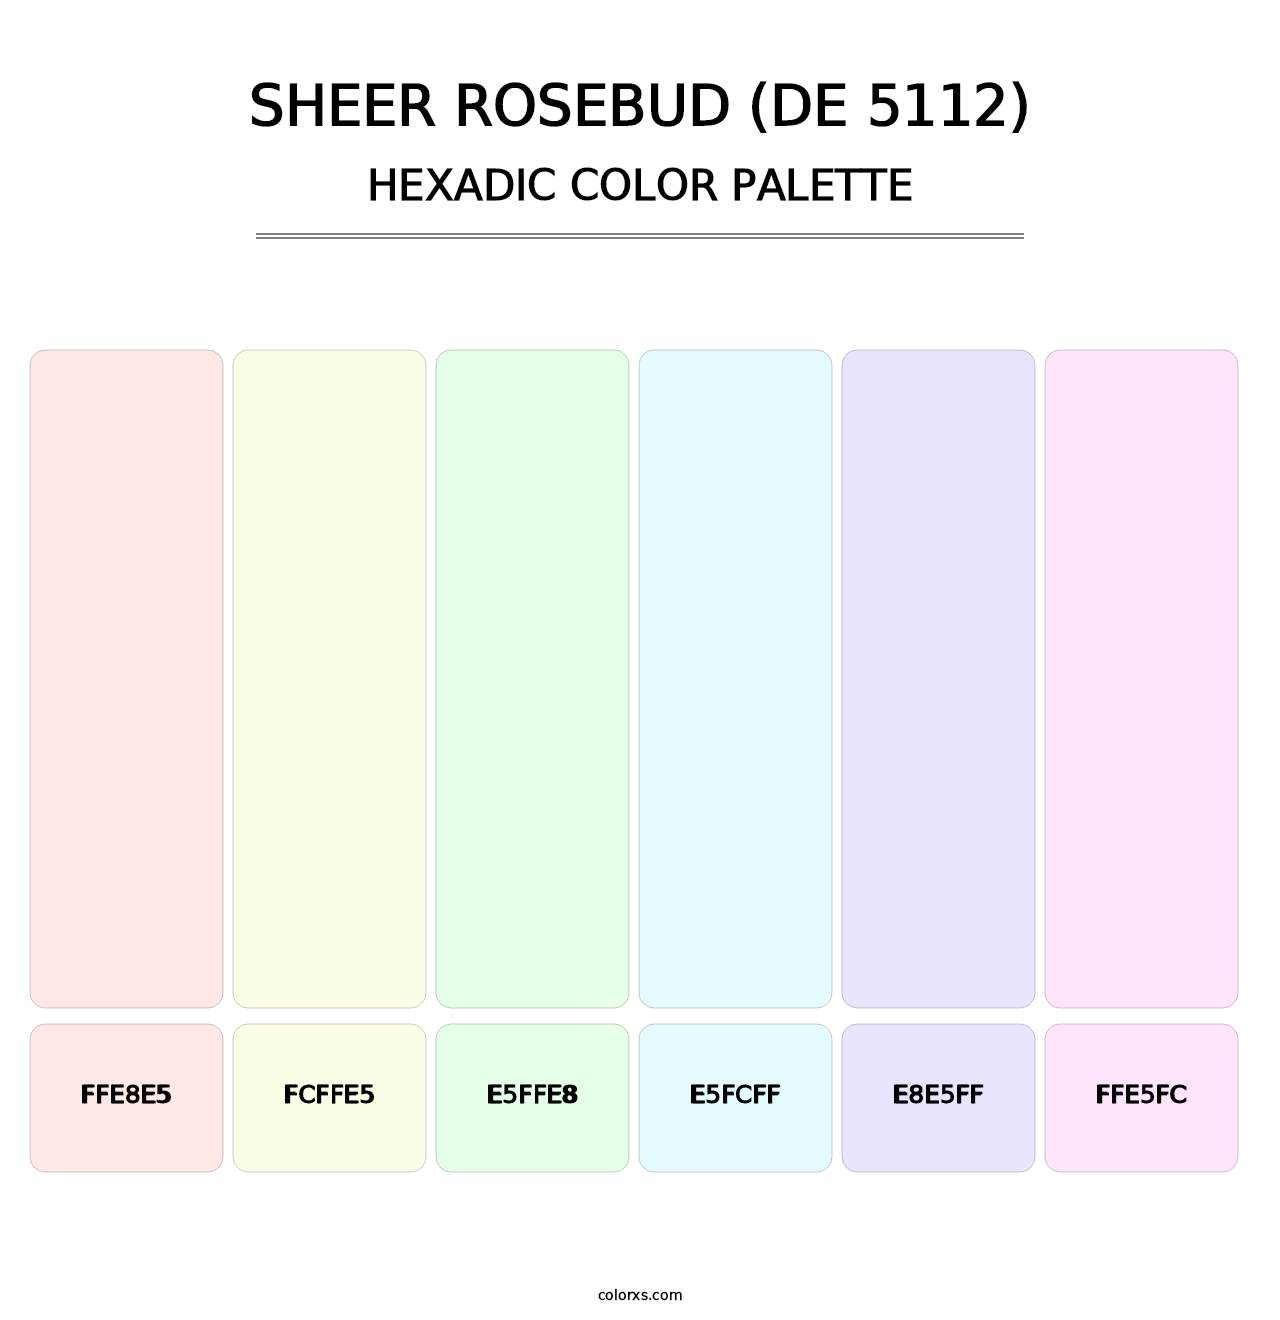 Sheer Rosebud (DE 5112) - Hexadic Color Palette